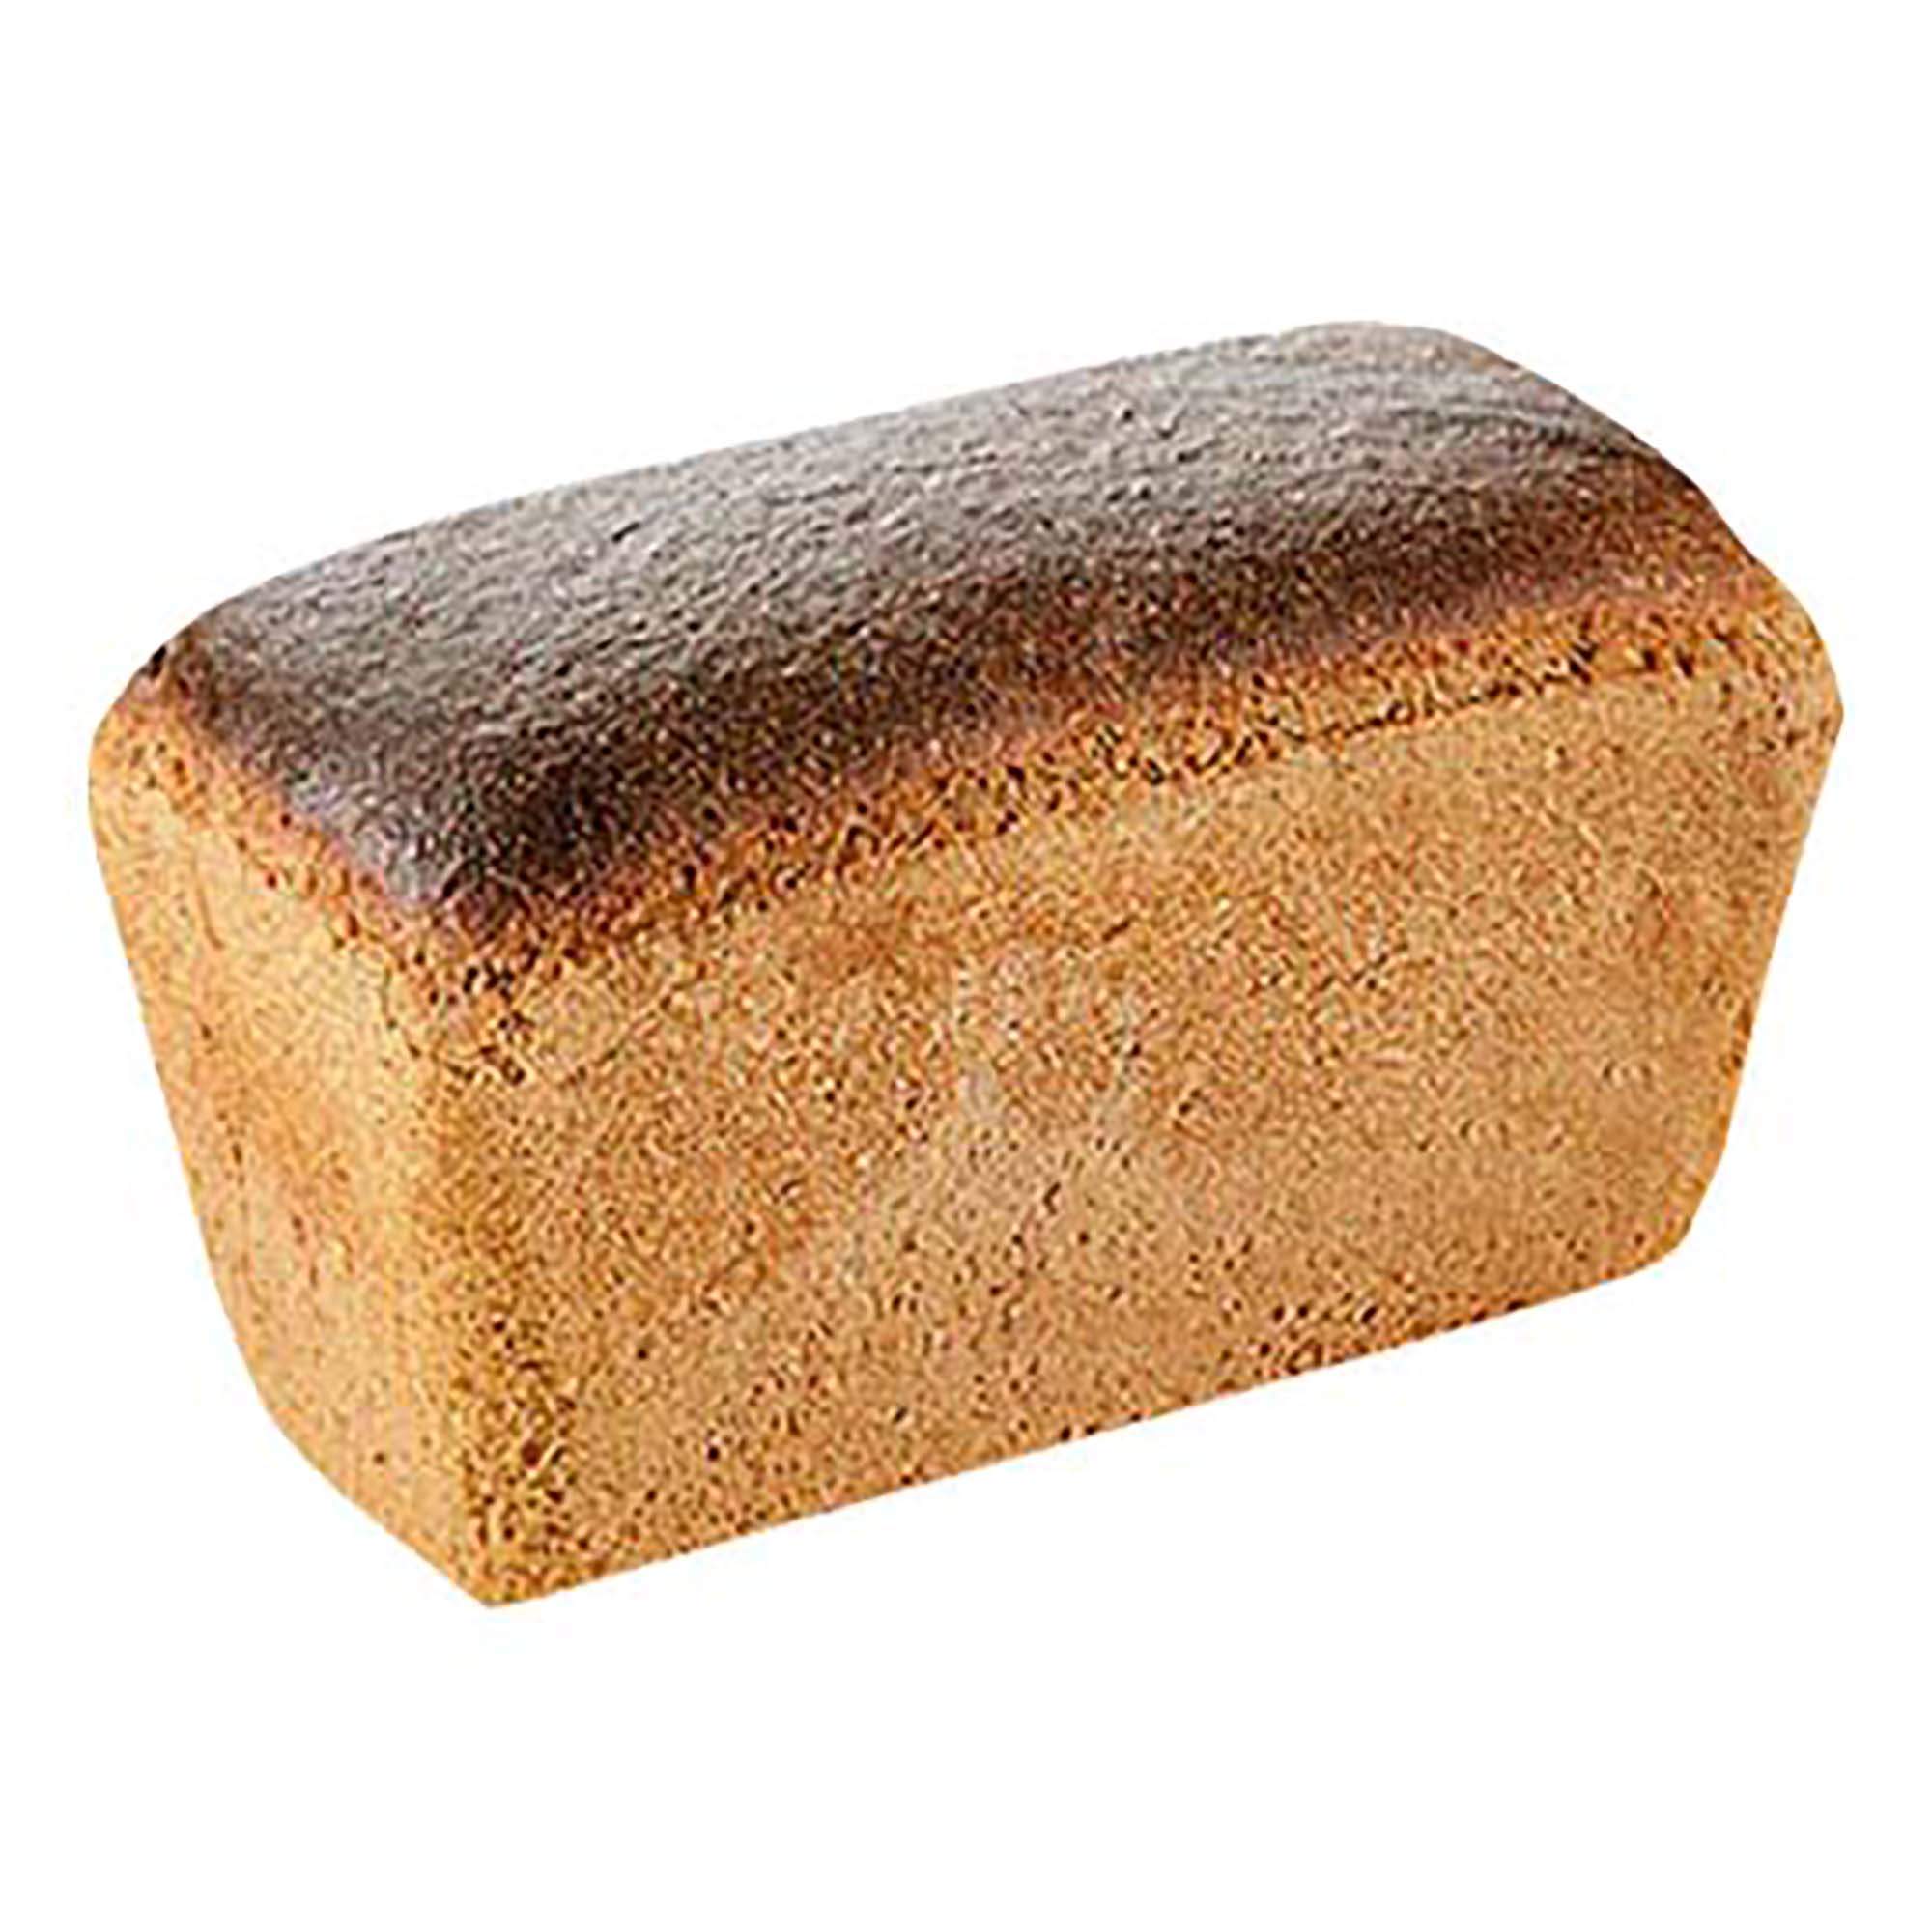 Хлеб серый, Королевский хлеб, Дарницкий, 620 г